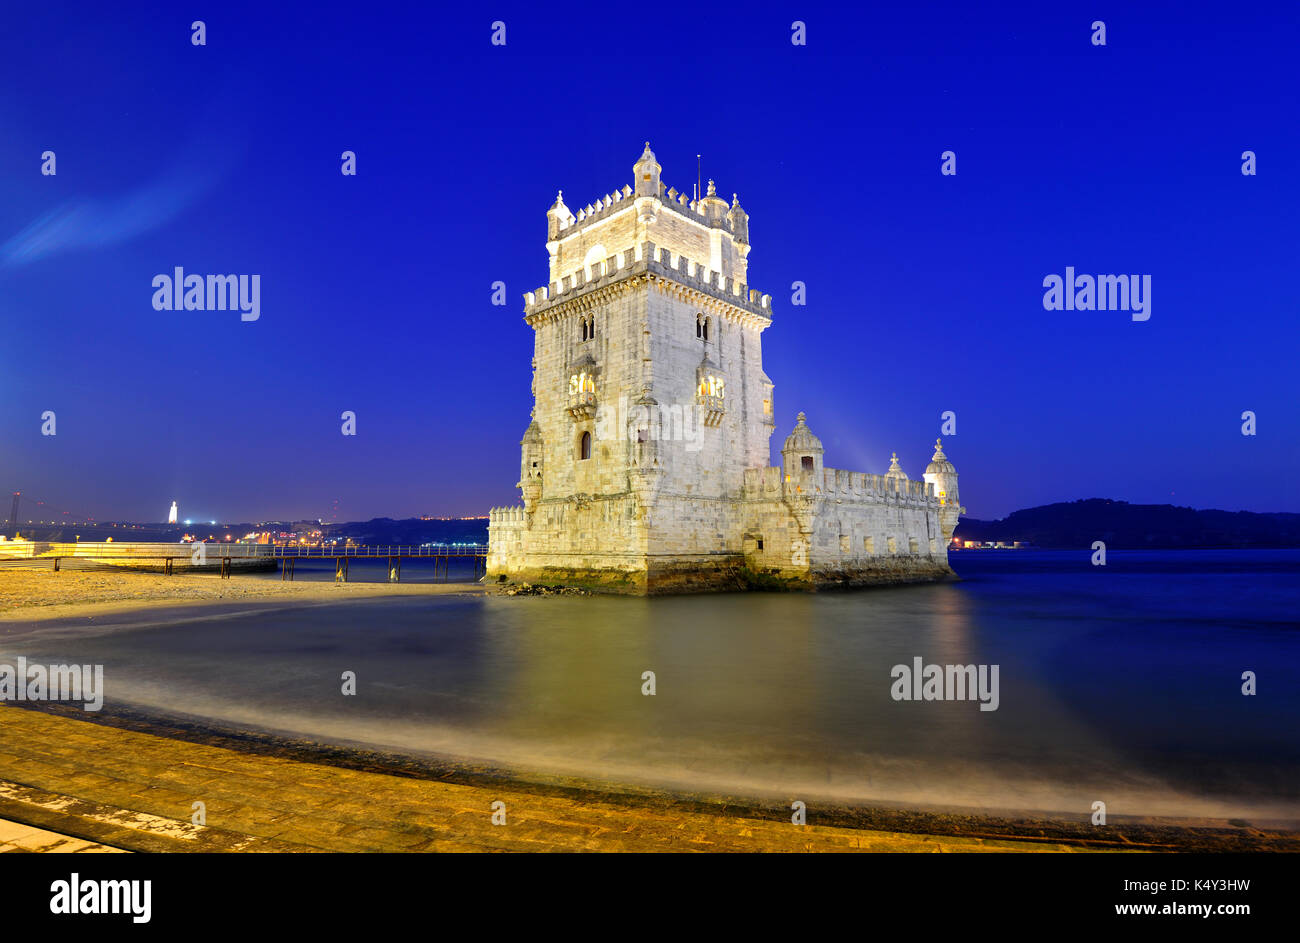 Torre de Belém (Belém Tower), a UNESCO World Heritage Site built in the 16th century, Lisbon, Portugal Stock Photo